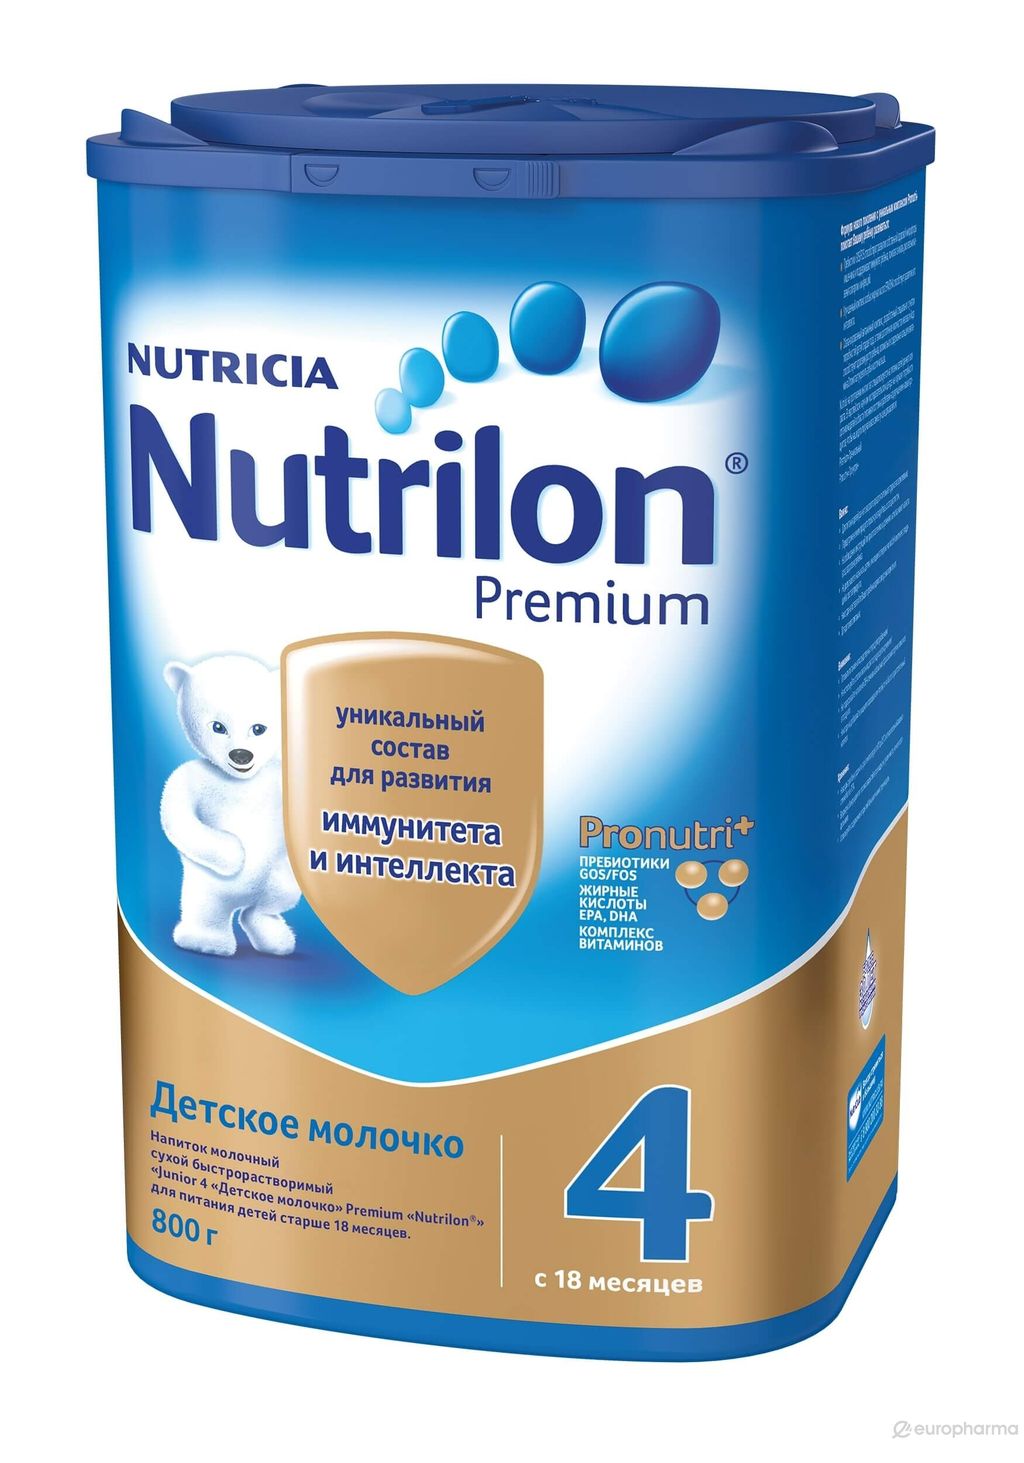 Nutrilon 4 Junior Premium Детское молочко, смесь молочная сухая, 800 г, 1 шт.